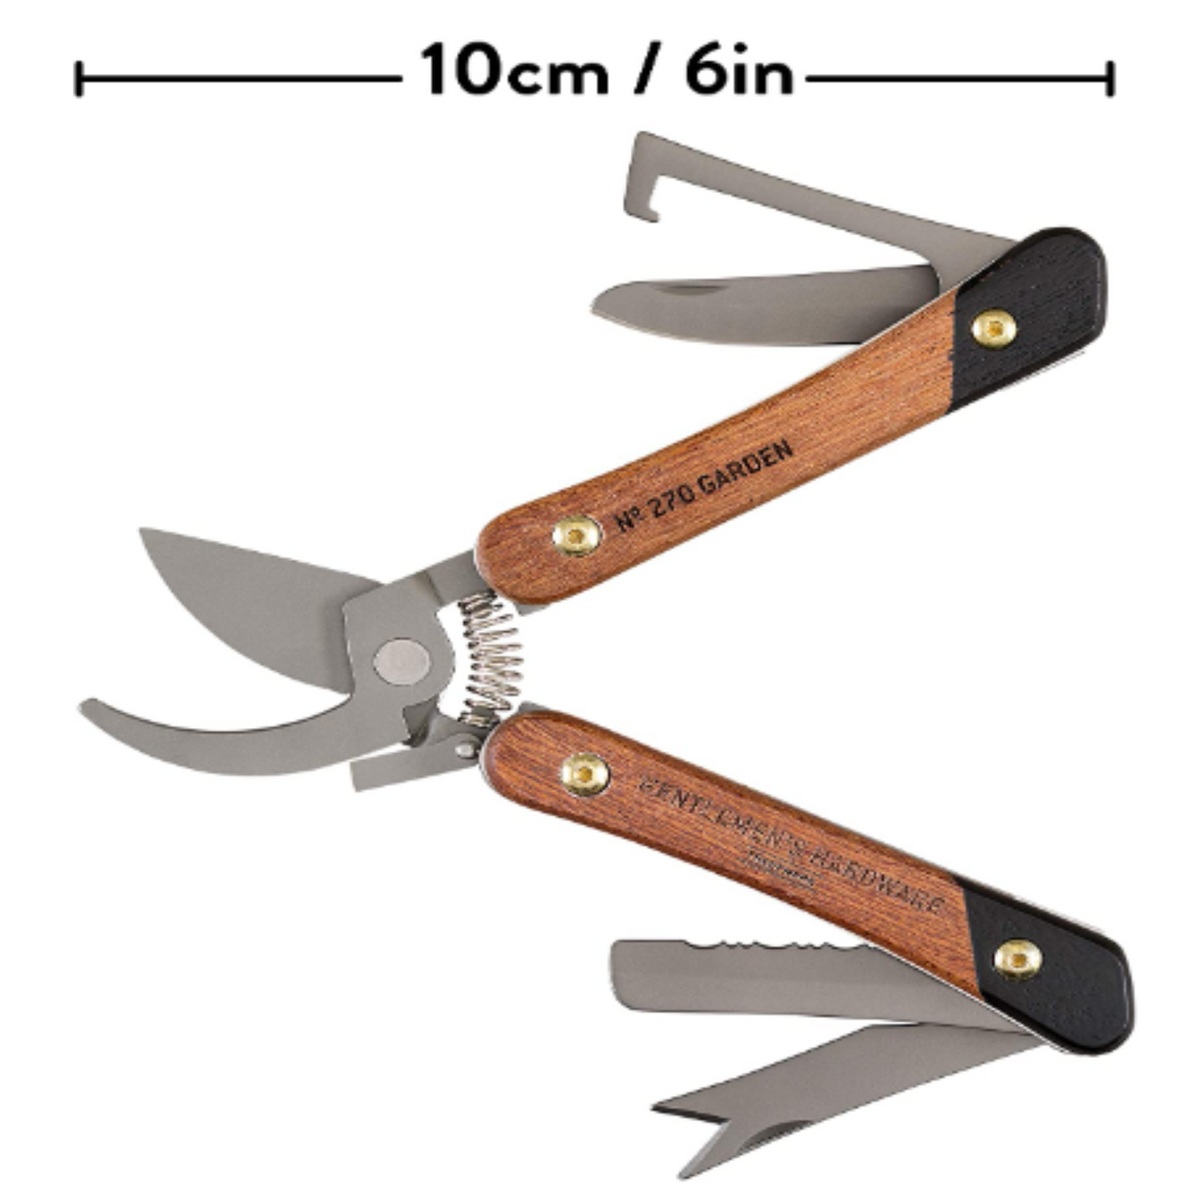 7-in-1, Pen Knife Multi-Tool